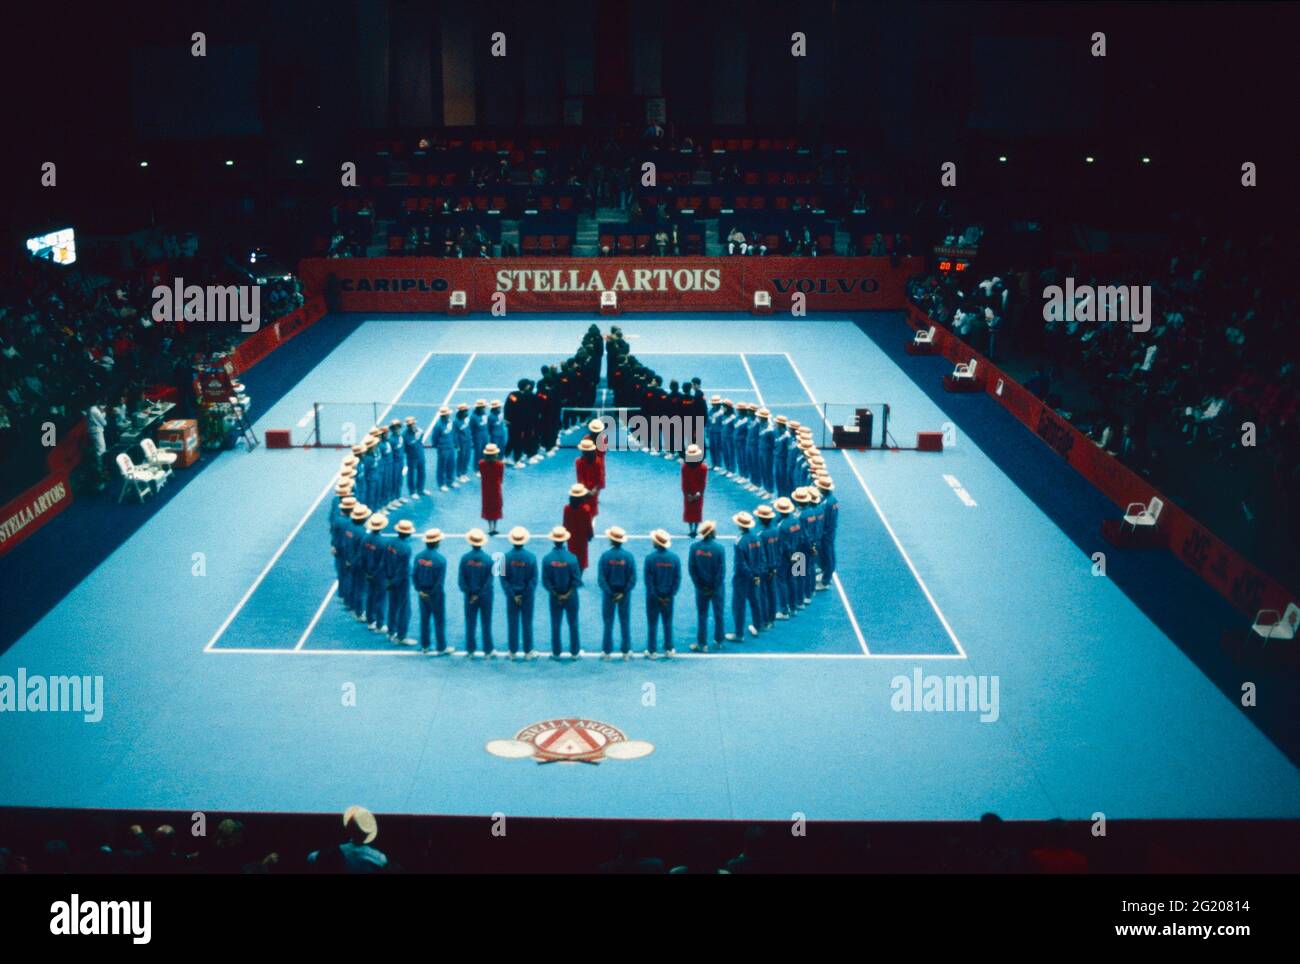 Arena indoor Palatrussardi Torneo di tennis Stella Artois, Milano, Italia 1991 Foto Stock